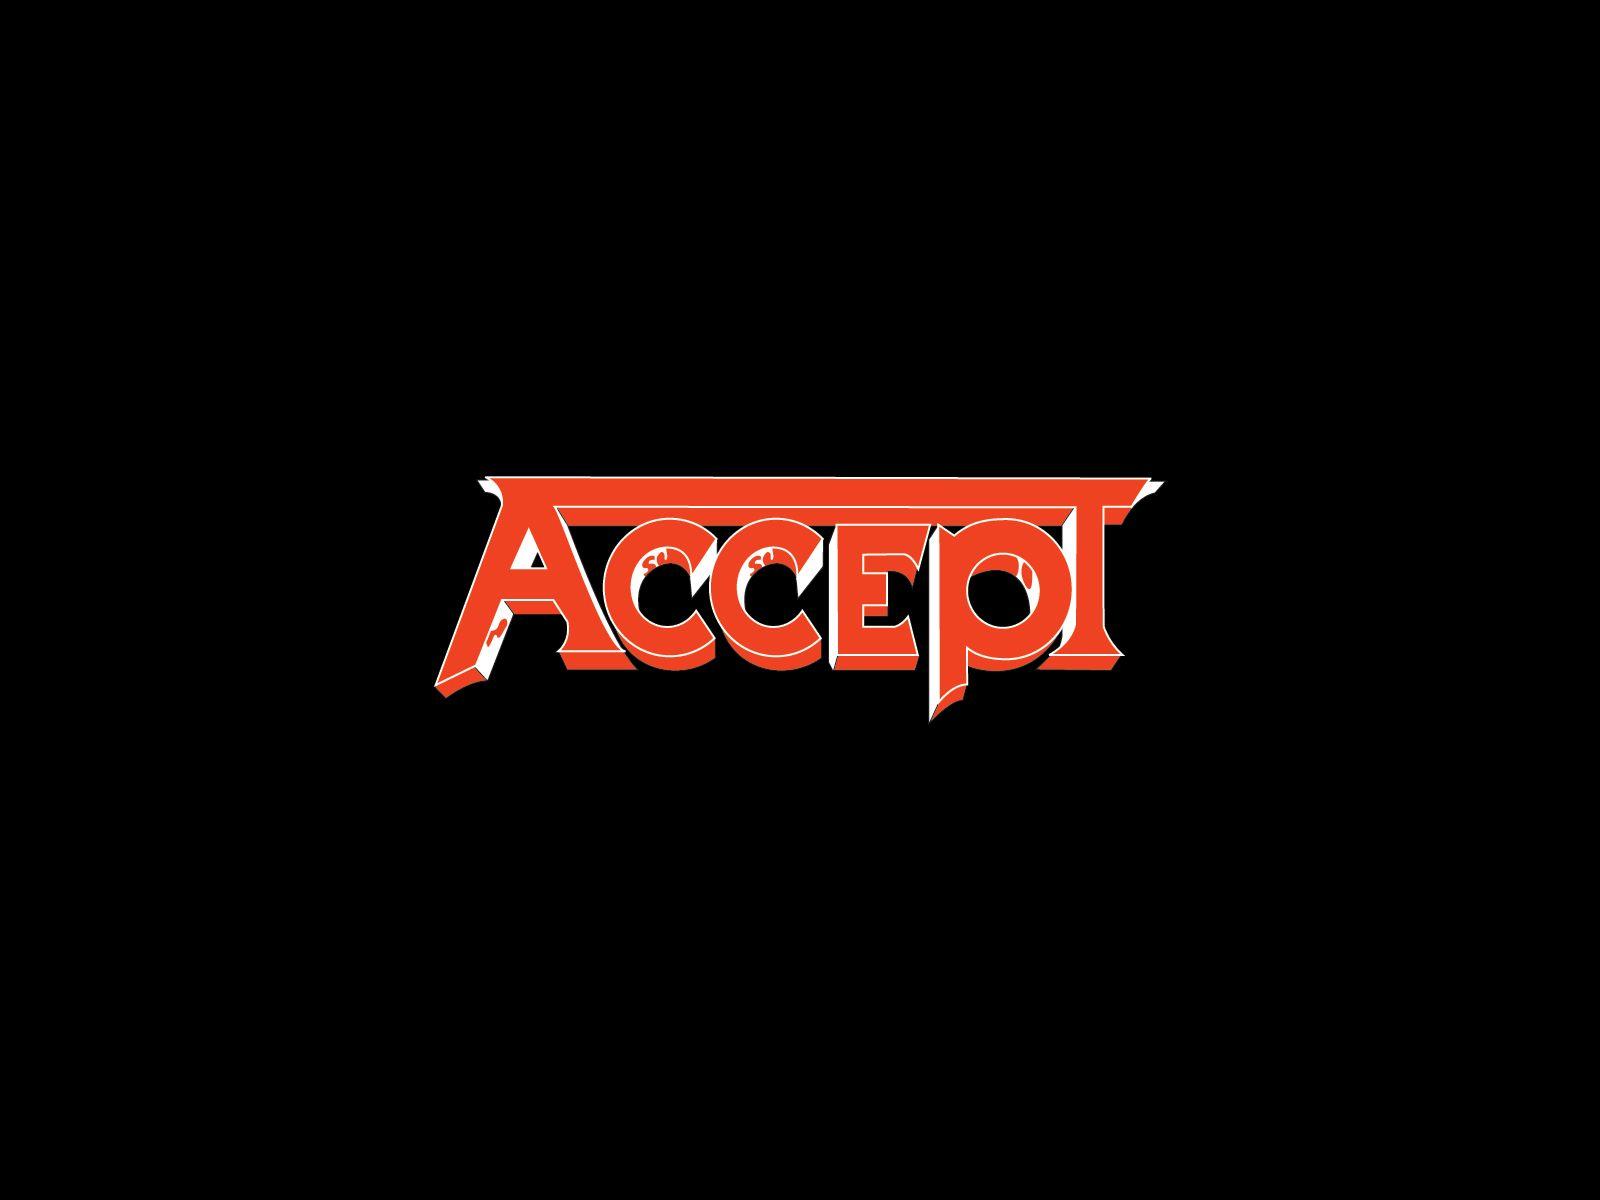 Accept band logo and wallpaper. Band logos band logos, metal bands logos, punk bands logos